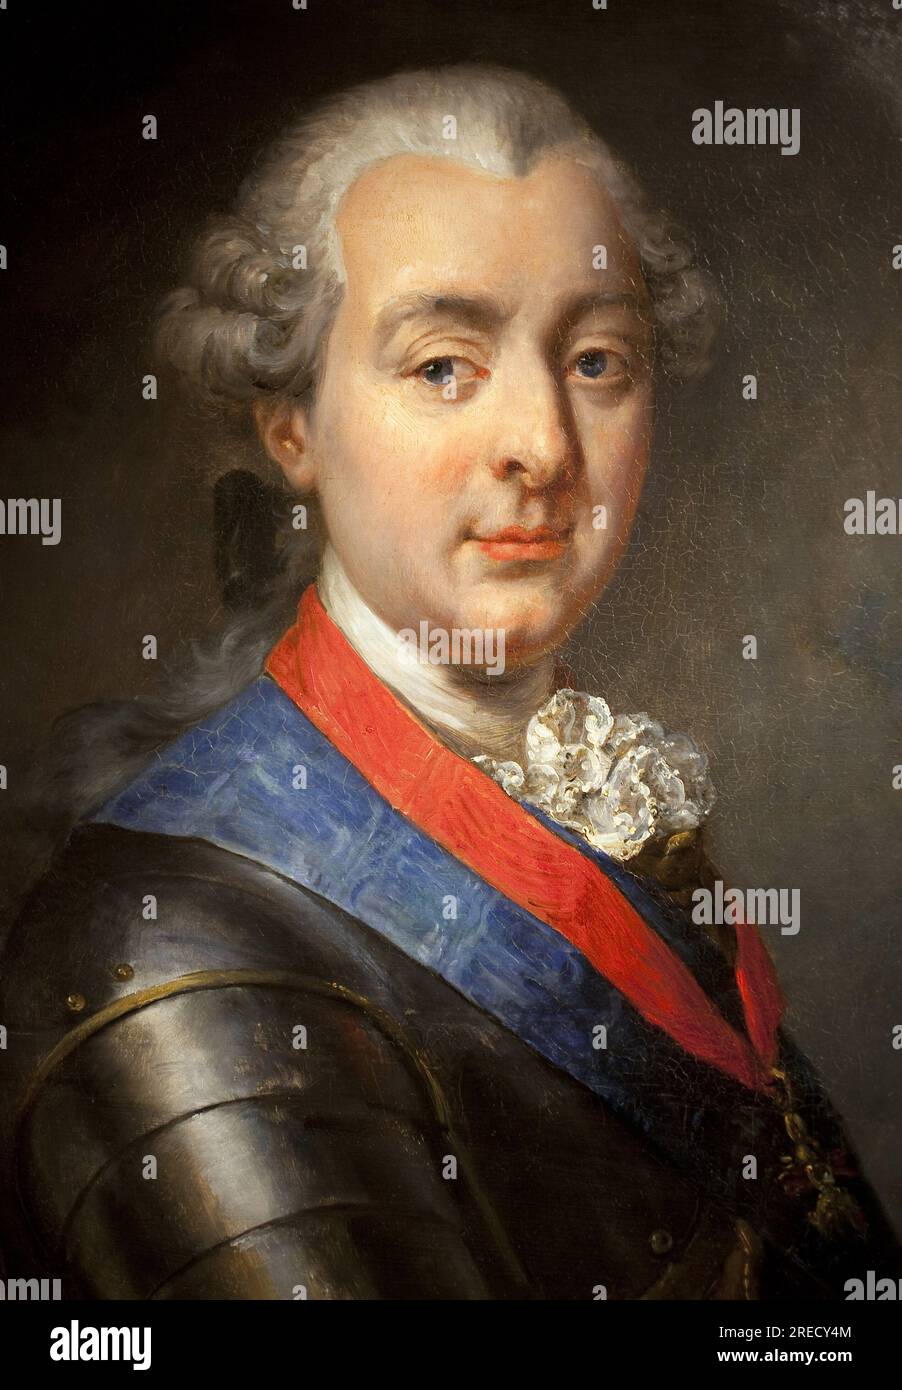 Portrait de Louis Jean Marie de Bourbon, duc de Penthievre (1725-1793), grand amiral et mecene. Peinture de Jean Pierre Franque (1774-1860), huile sur toile, 1839. musee de Port Louis. Stock Photo